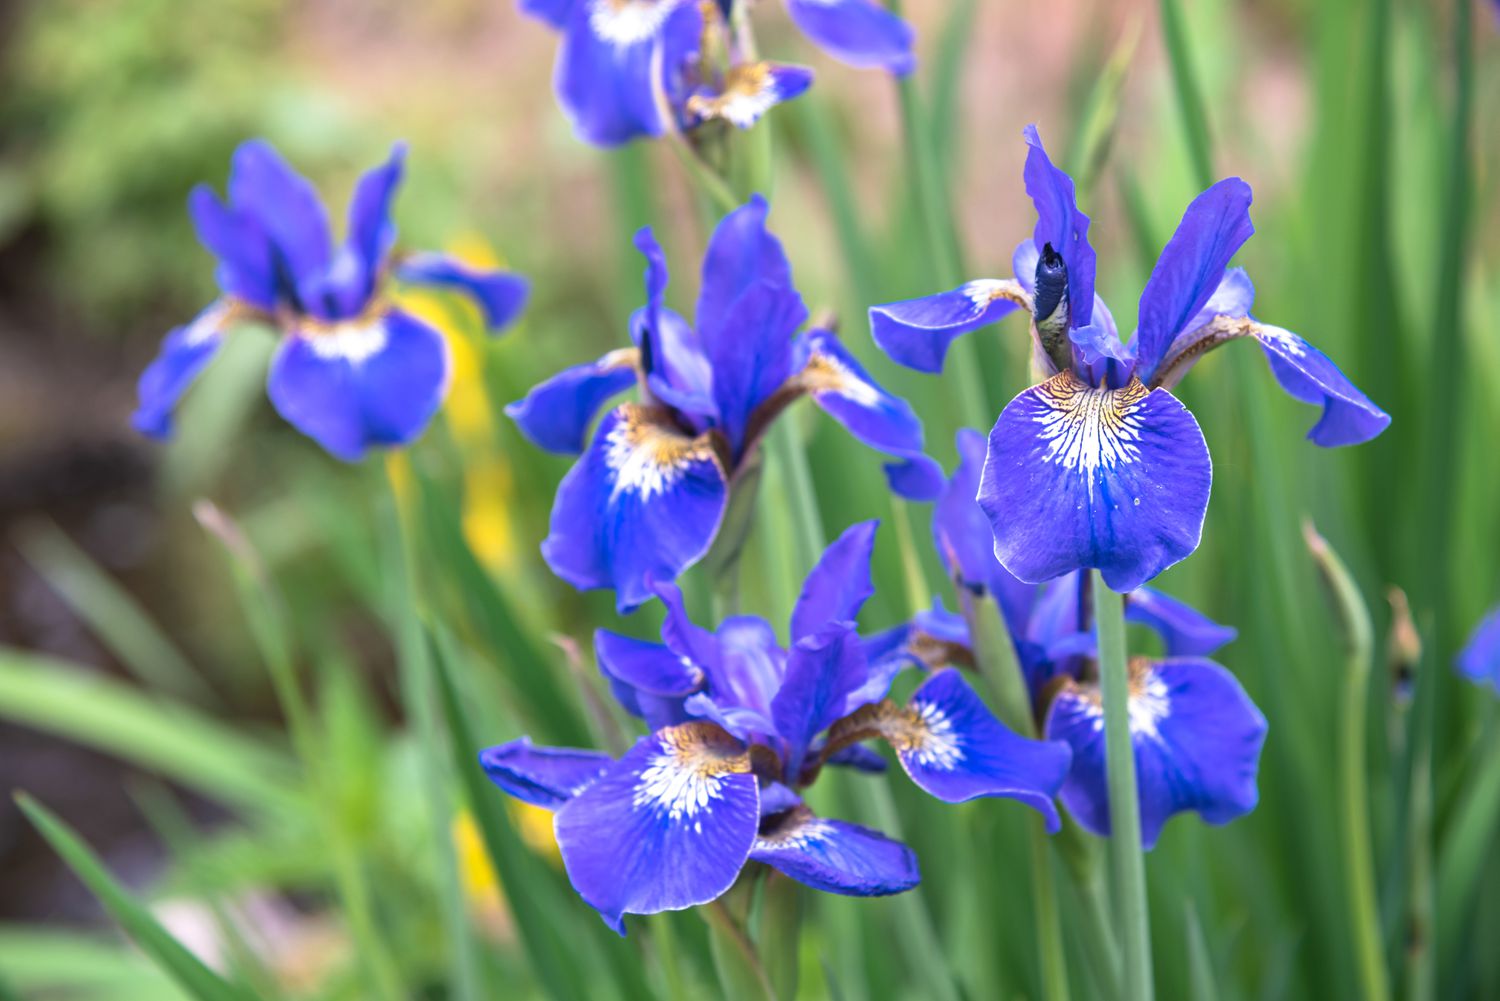 Plante d'iris de Sibérie avec des fleurs violet-bleu avec des centres blancs et jaunes